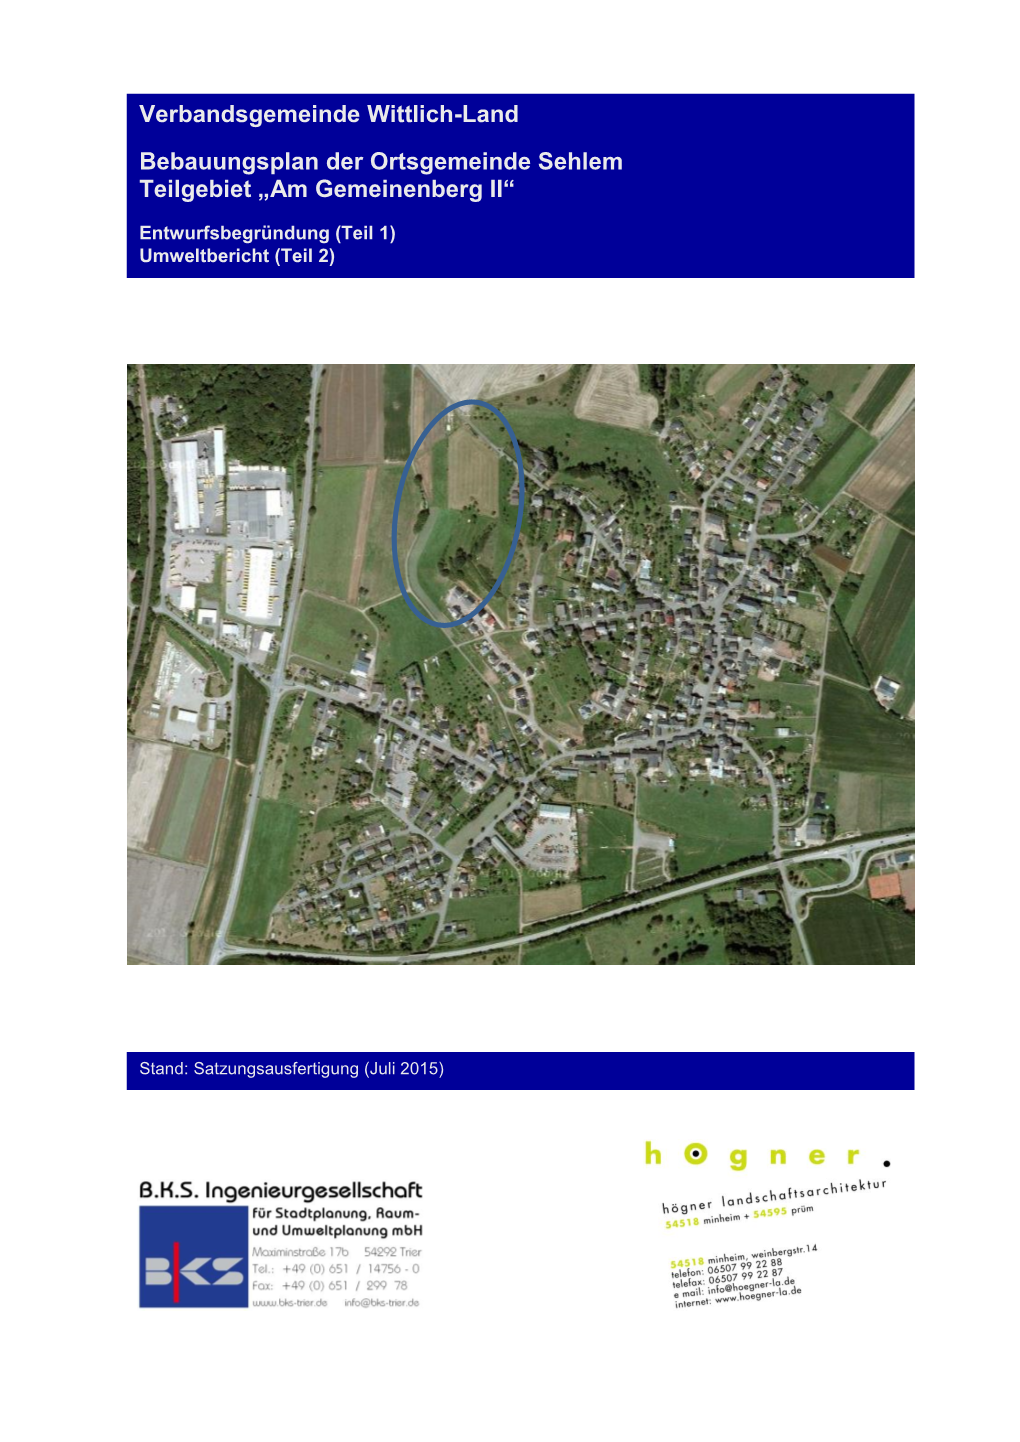 Verbandsgemeinde Wittlich-Land Bebauungsplan Der Ortsgemeinde